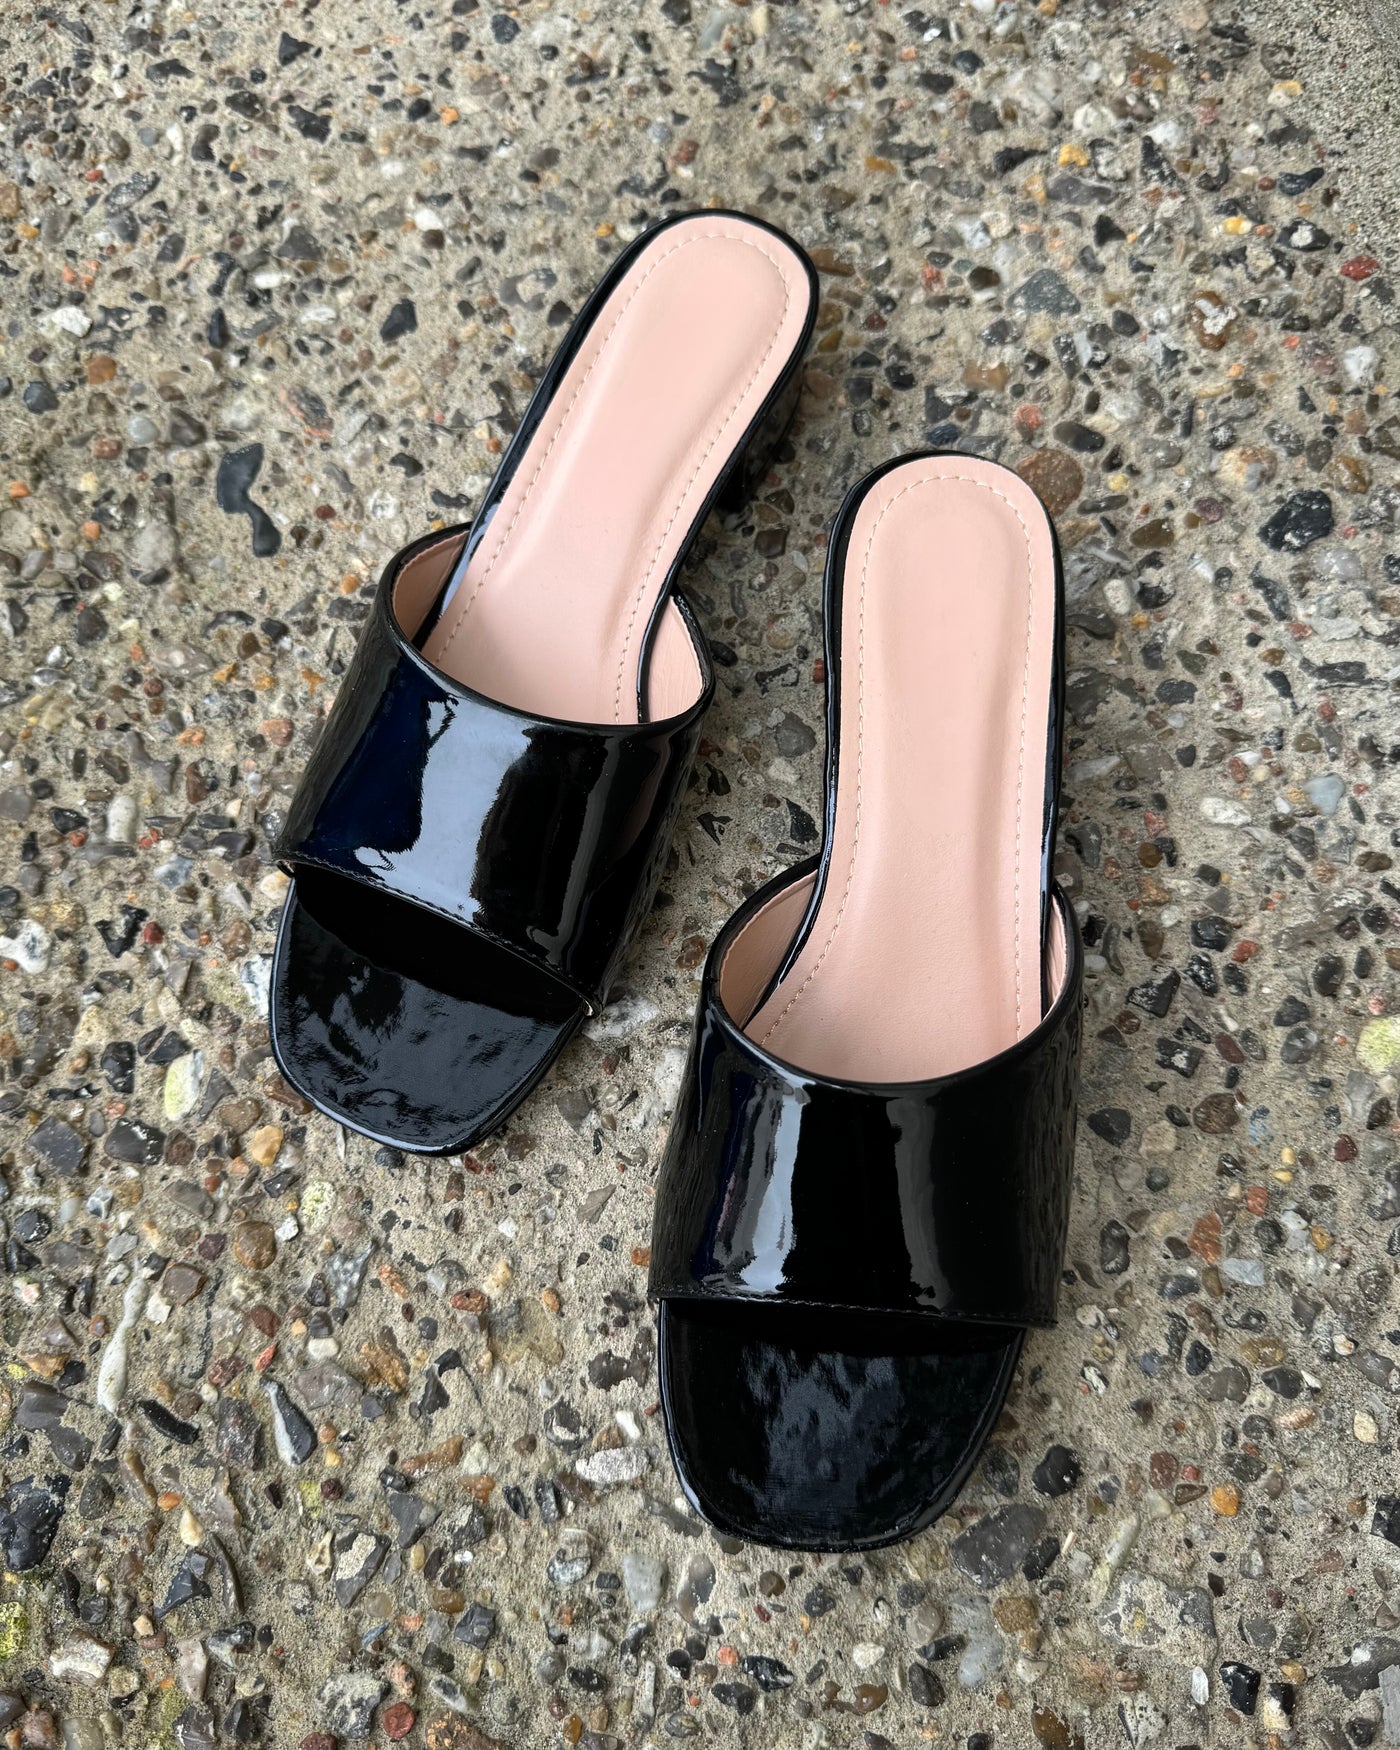 Sophia højhælede sandaler sort